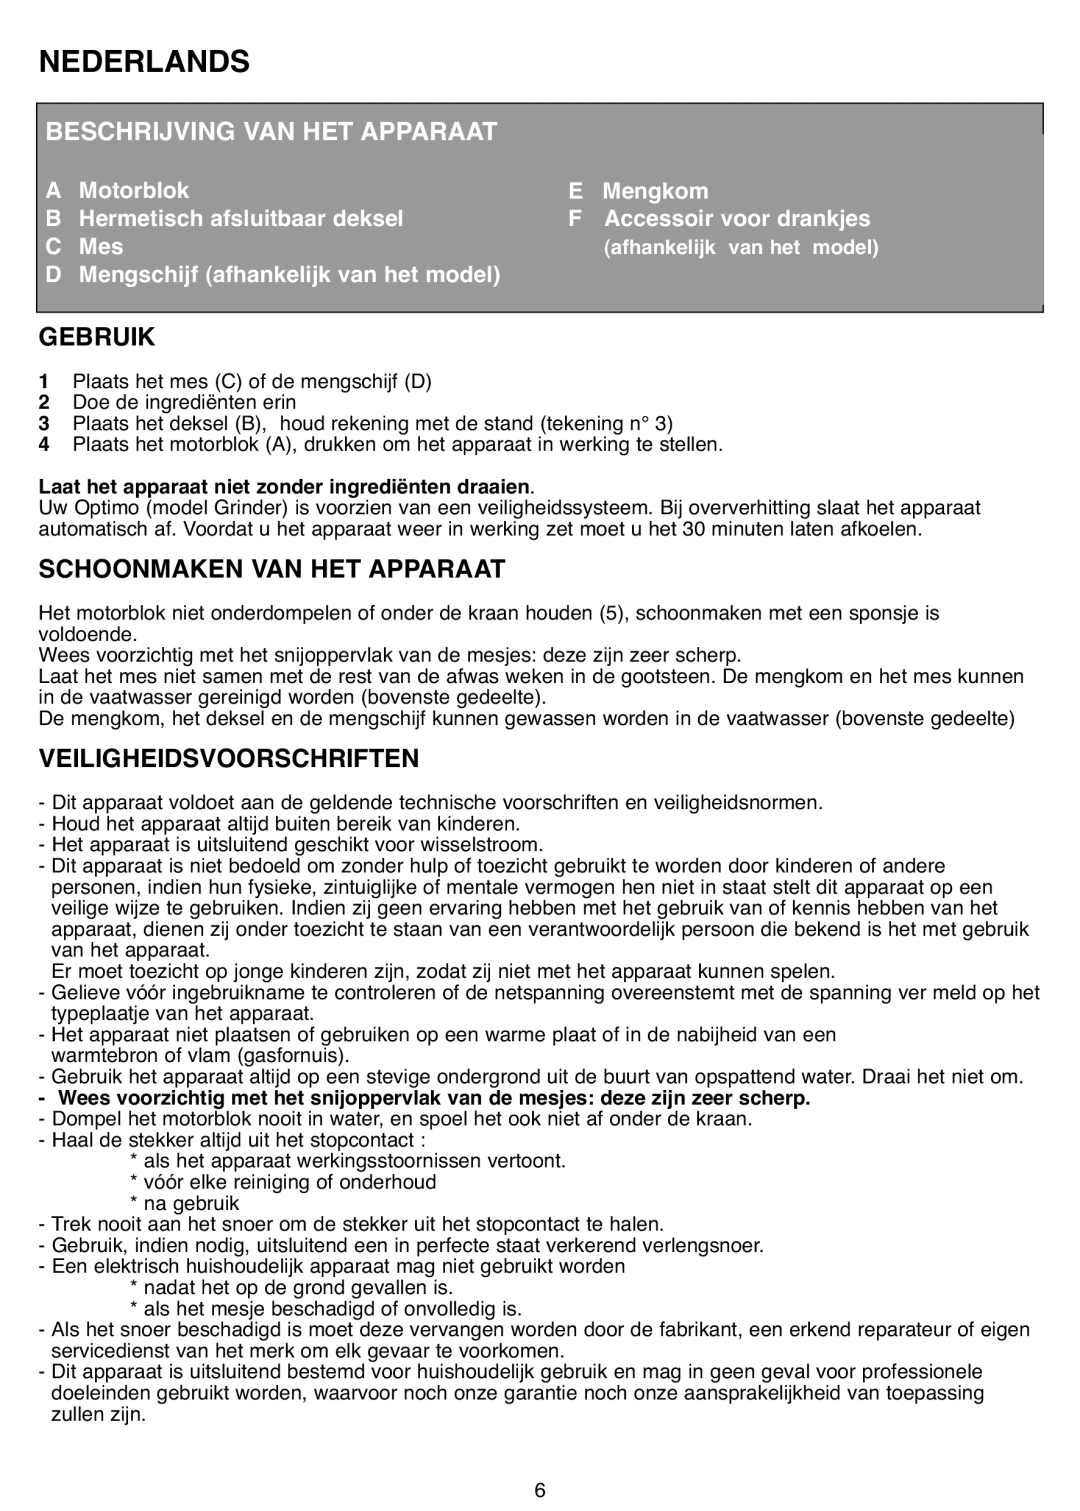 Tefal MB403444 Nederlands, Beschrijving Van Het Apparaat, Gebruik, Schoonmaken Van Het Apparaat, Veiligheidsvoorschriften 